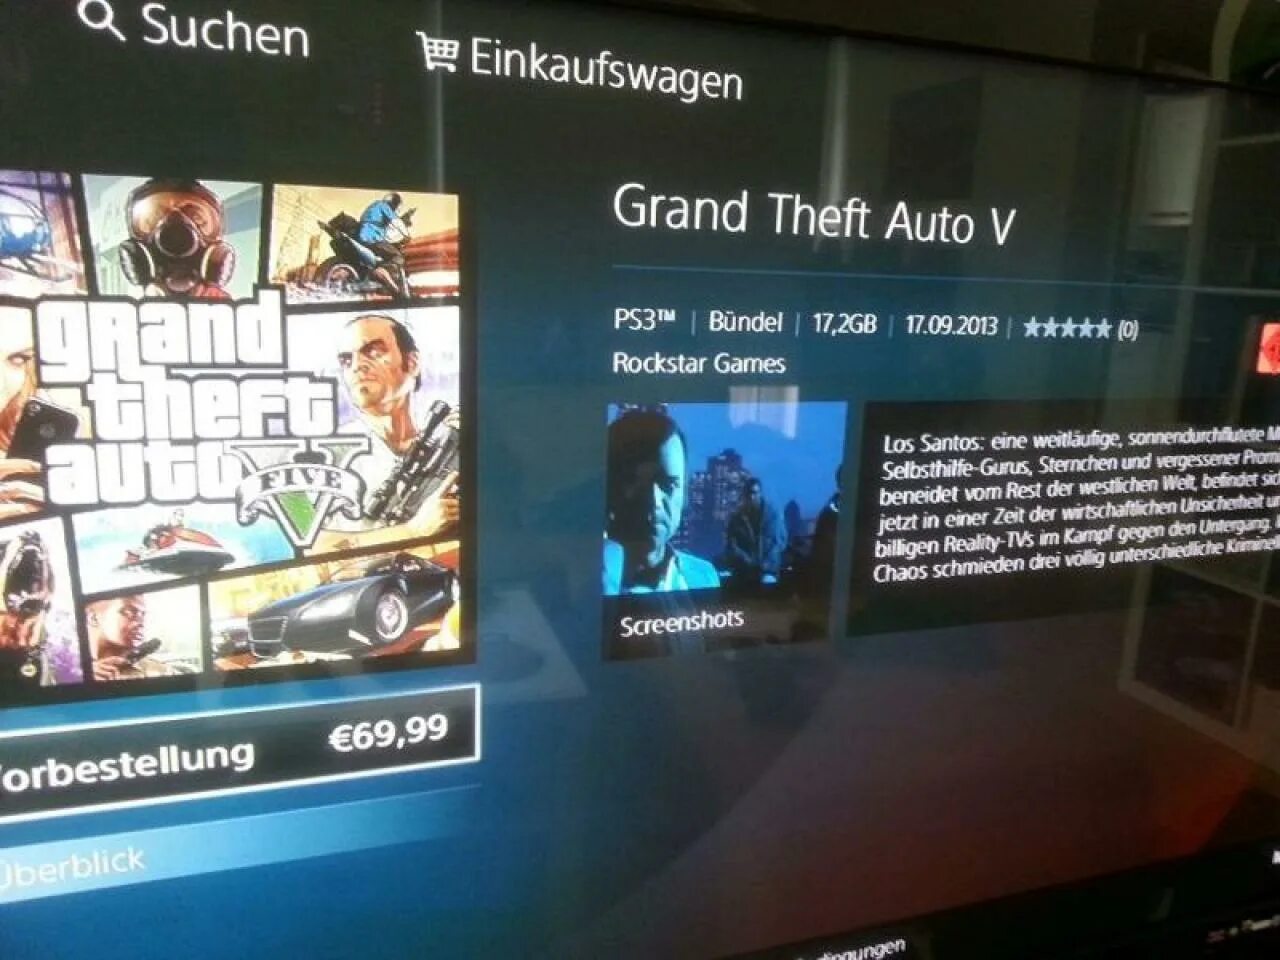 Коллекционное издание ps3 Grand Theft auto 5. PLAYSTATION Store GTA 4. ГТА 5 ПС 4 В ПС сторе. GTA 5 PLAYSTATION 4 Store. Пс стор 5